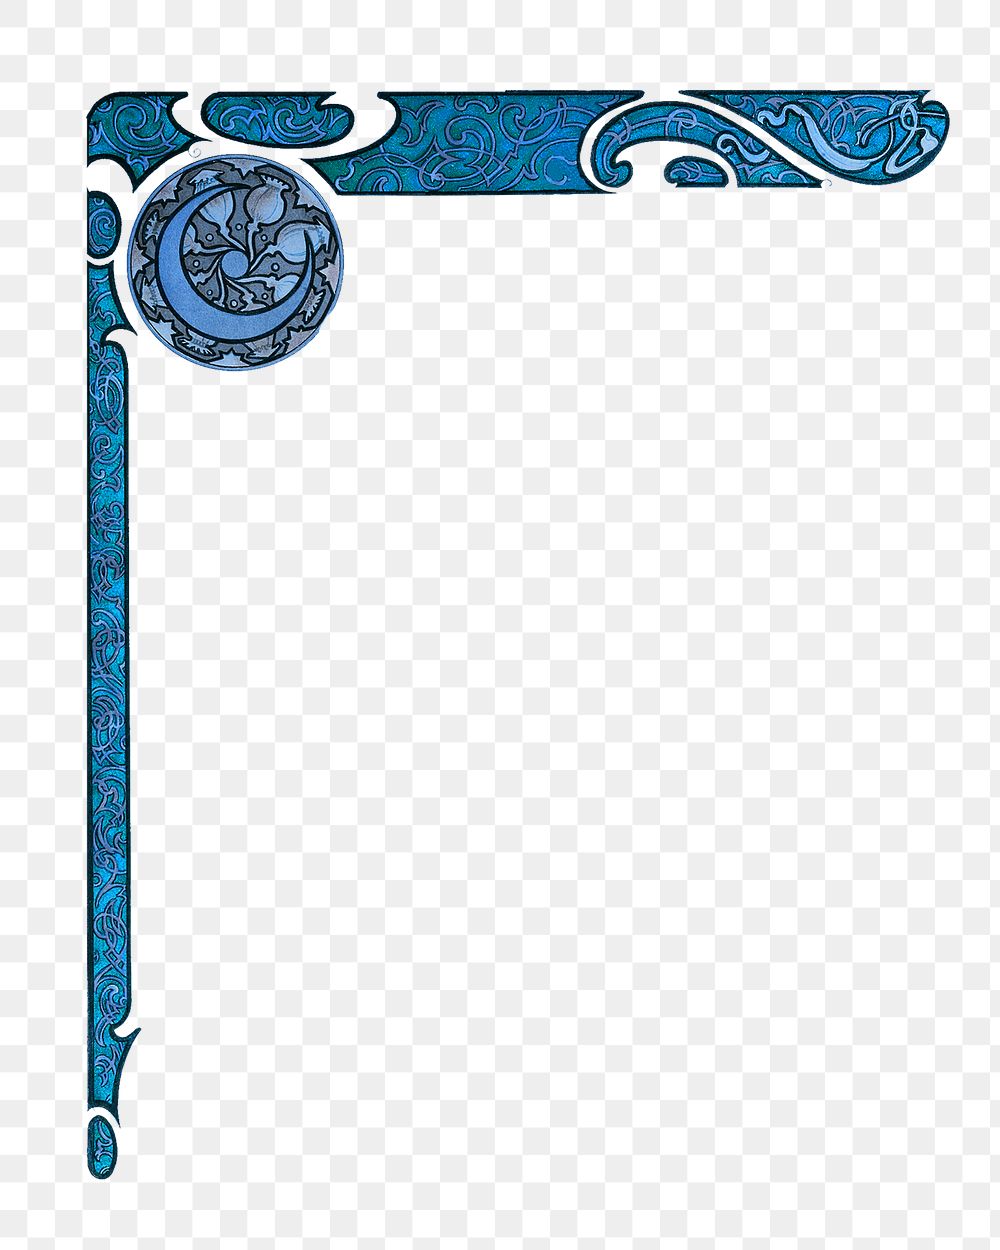 Celestial corner png element, blue vintage design on transparent background